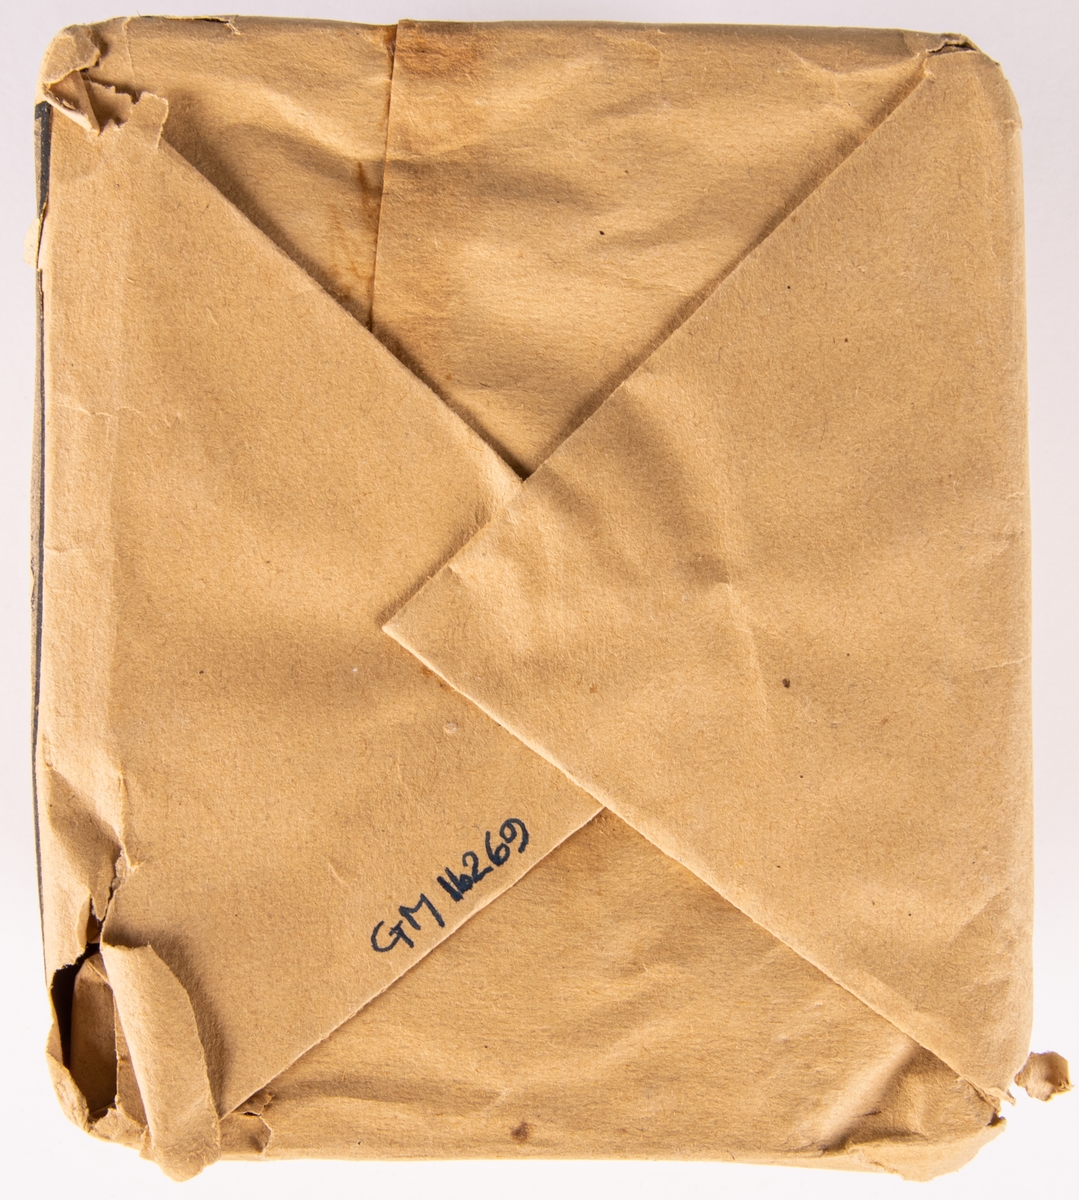 Förpackning med svavelstickor, 11x13cm.
Märkt "Gustafsbergs nya tändstickor".